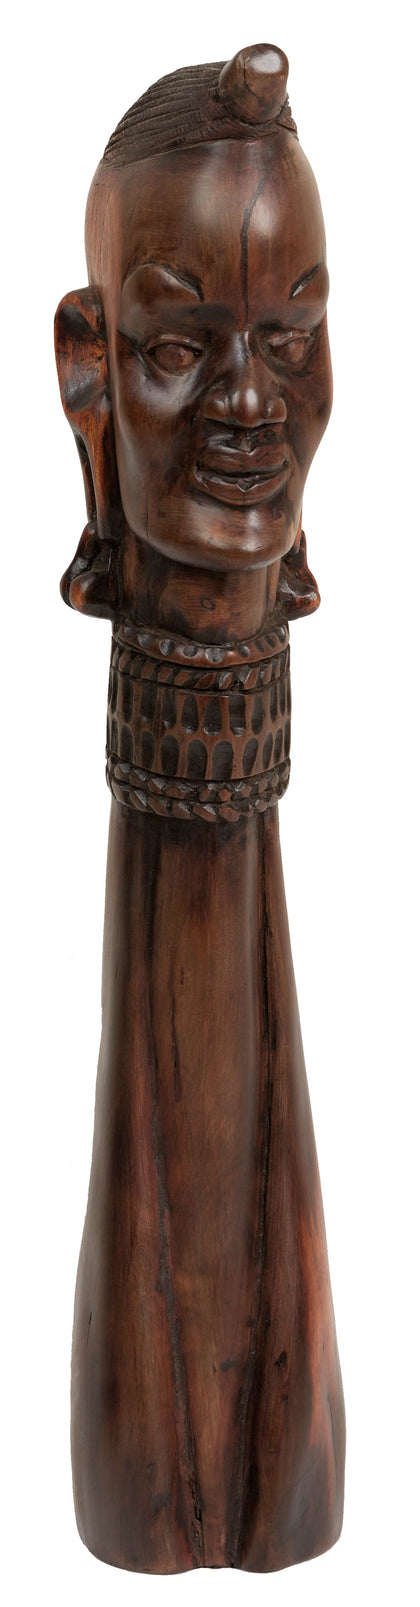 East African Figure 04, , African Sculptures - Artisera